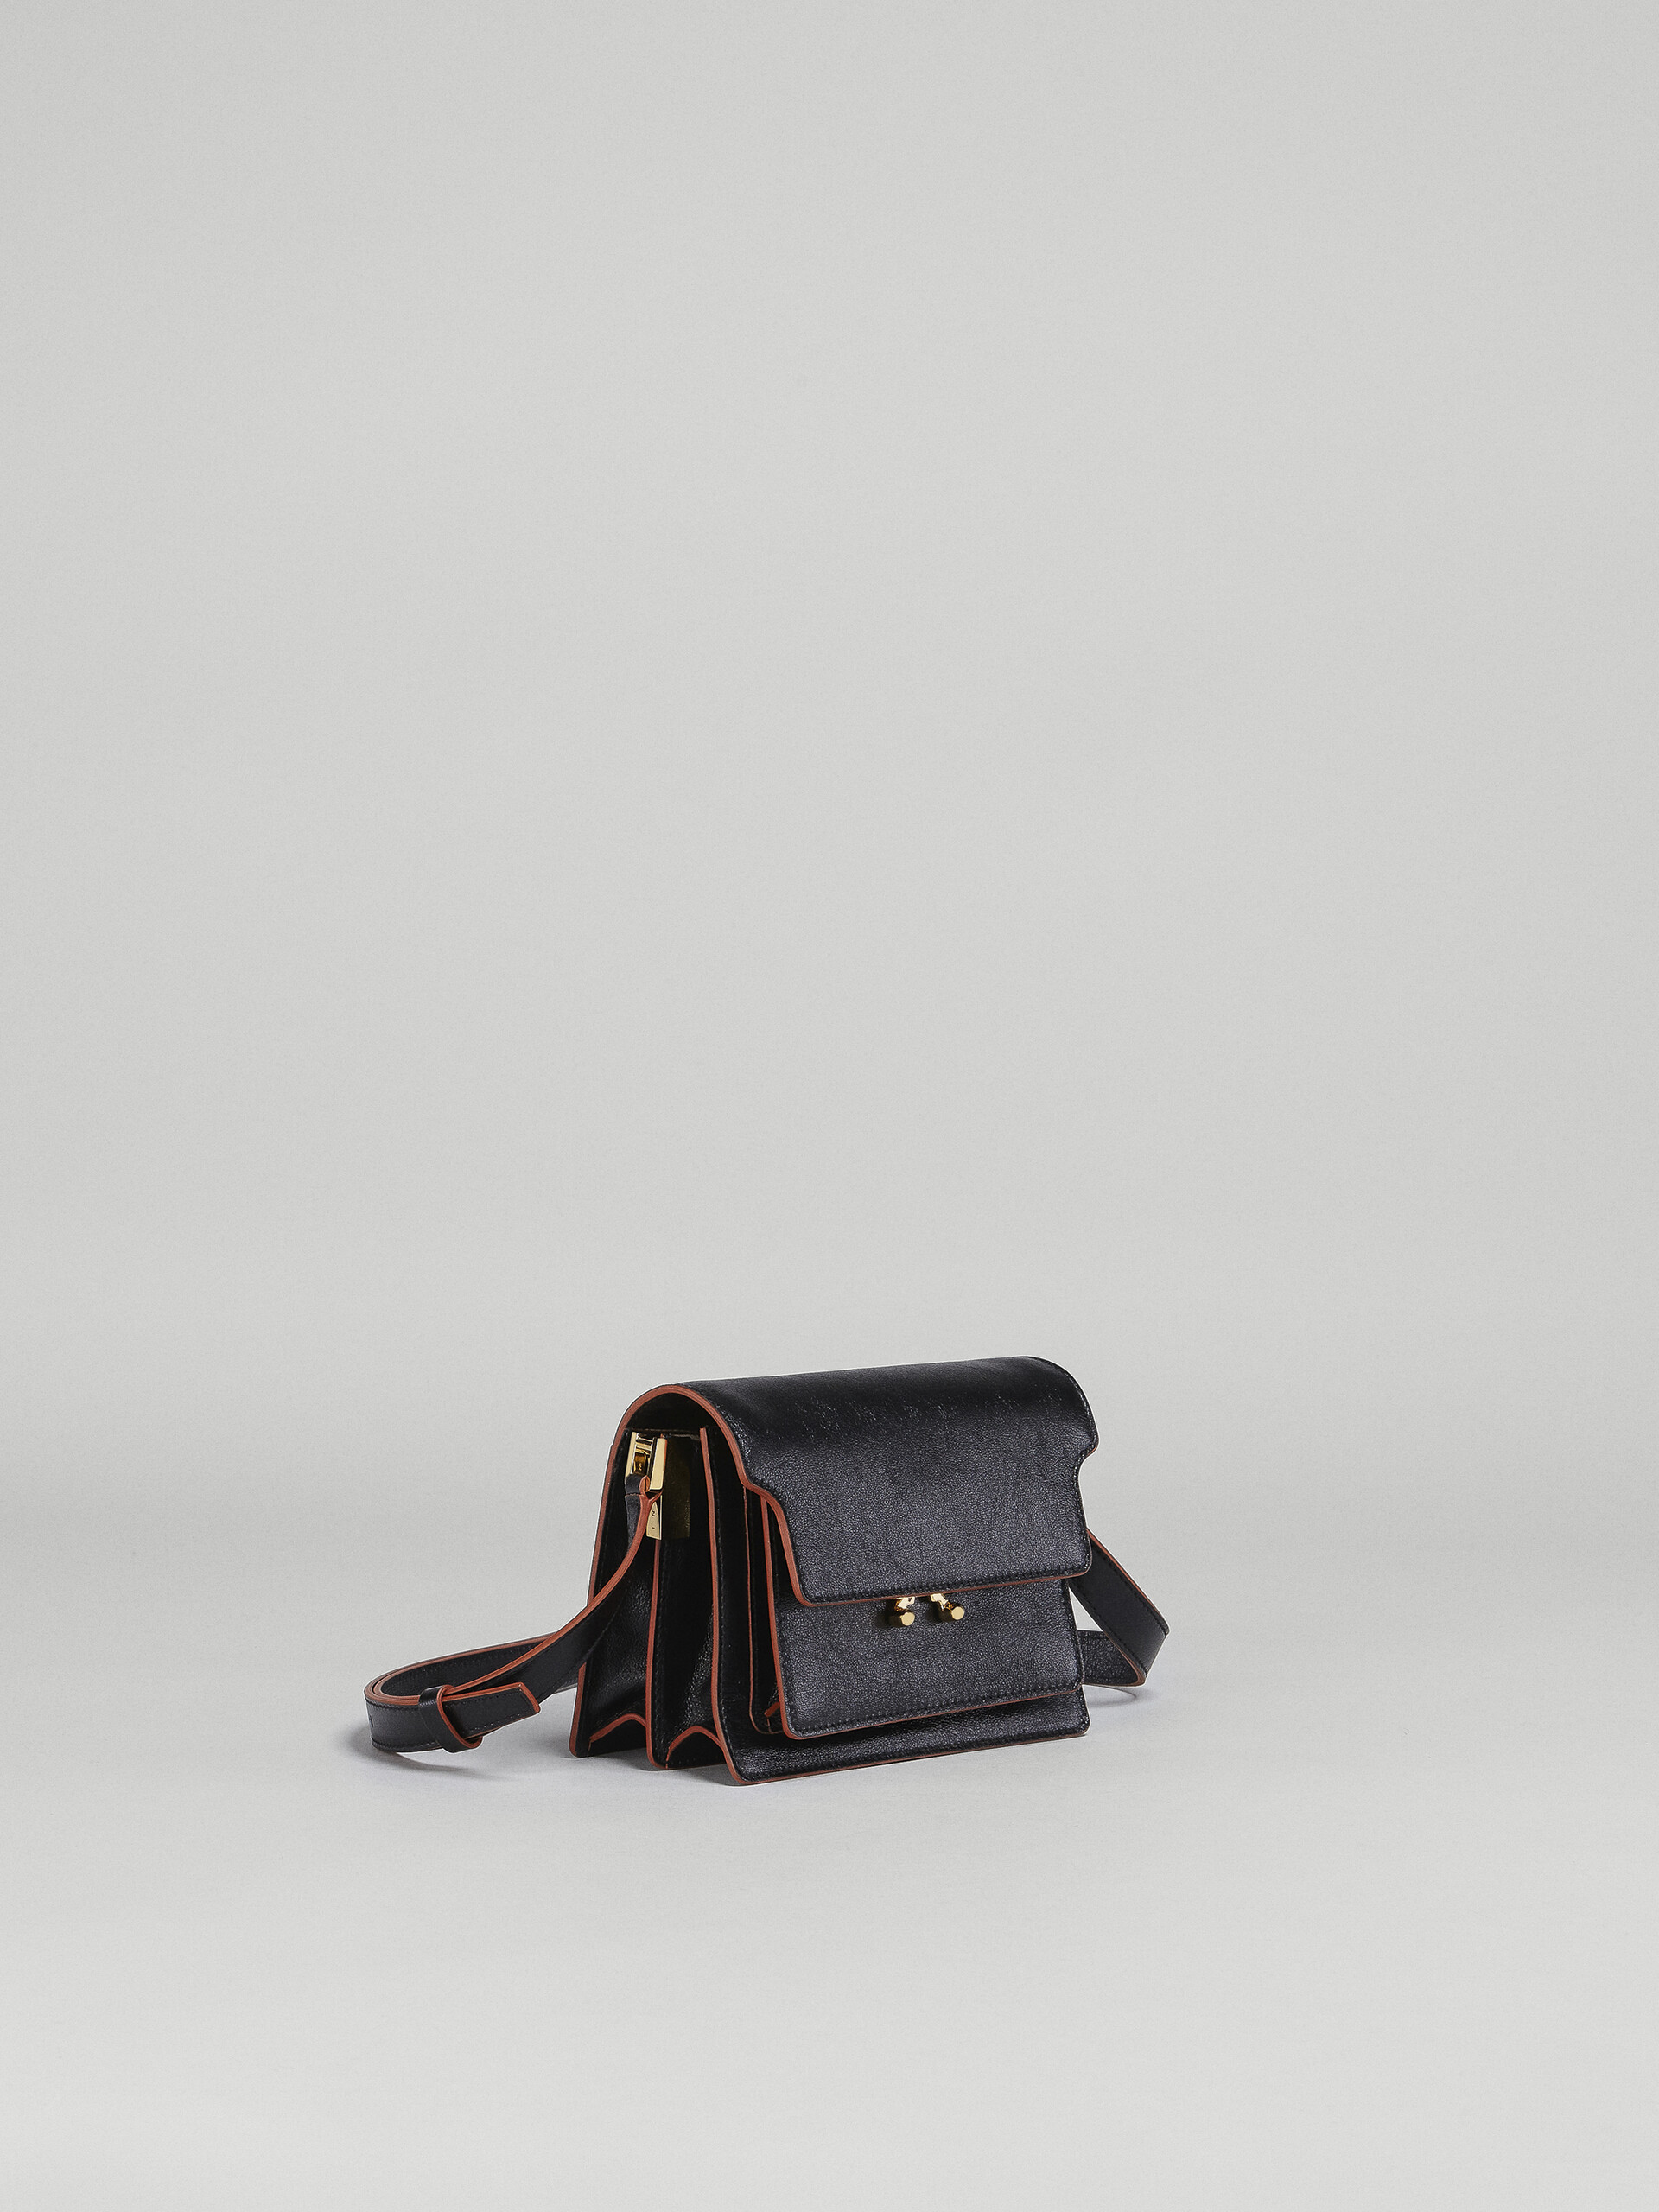 Mini sac TRUNK SOFT en veau foulonné noir - Sacs portés épaule - Image 6